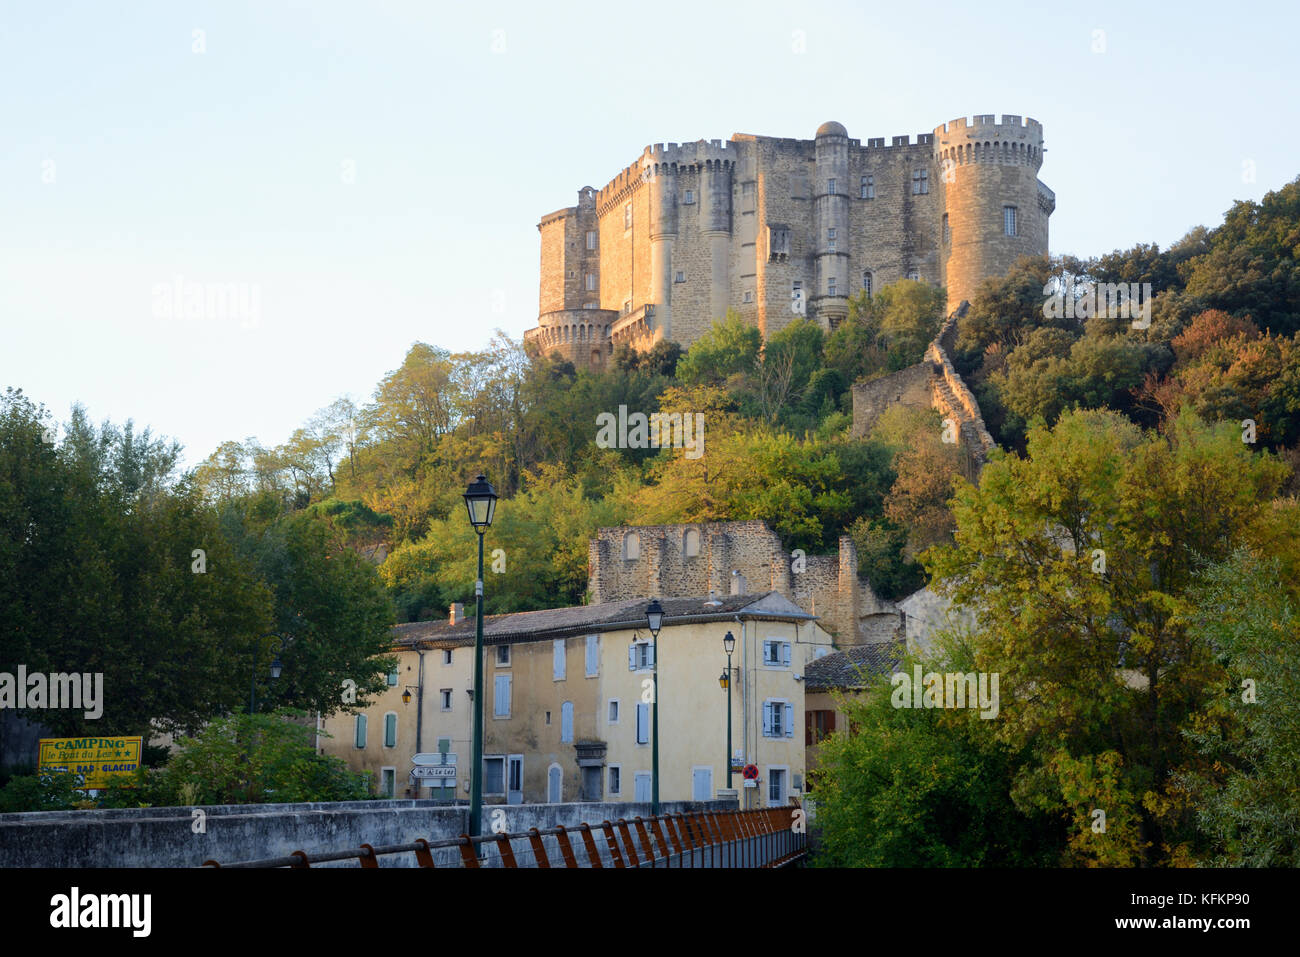 Lumière matinale sur le village et le château, datant de la période médiévale à la Renaissance, Suze-la-Rousse, Drôme, France Banque D'Images